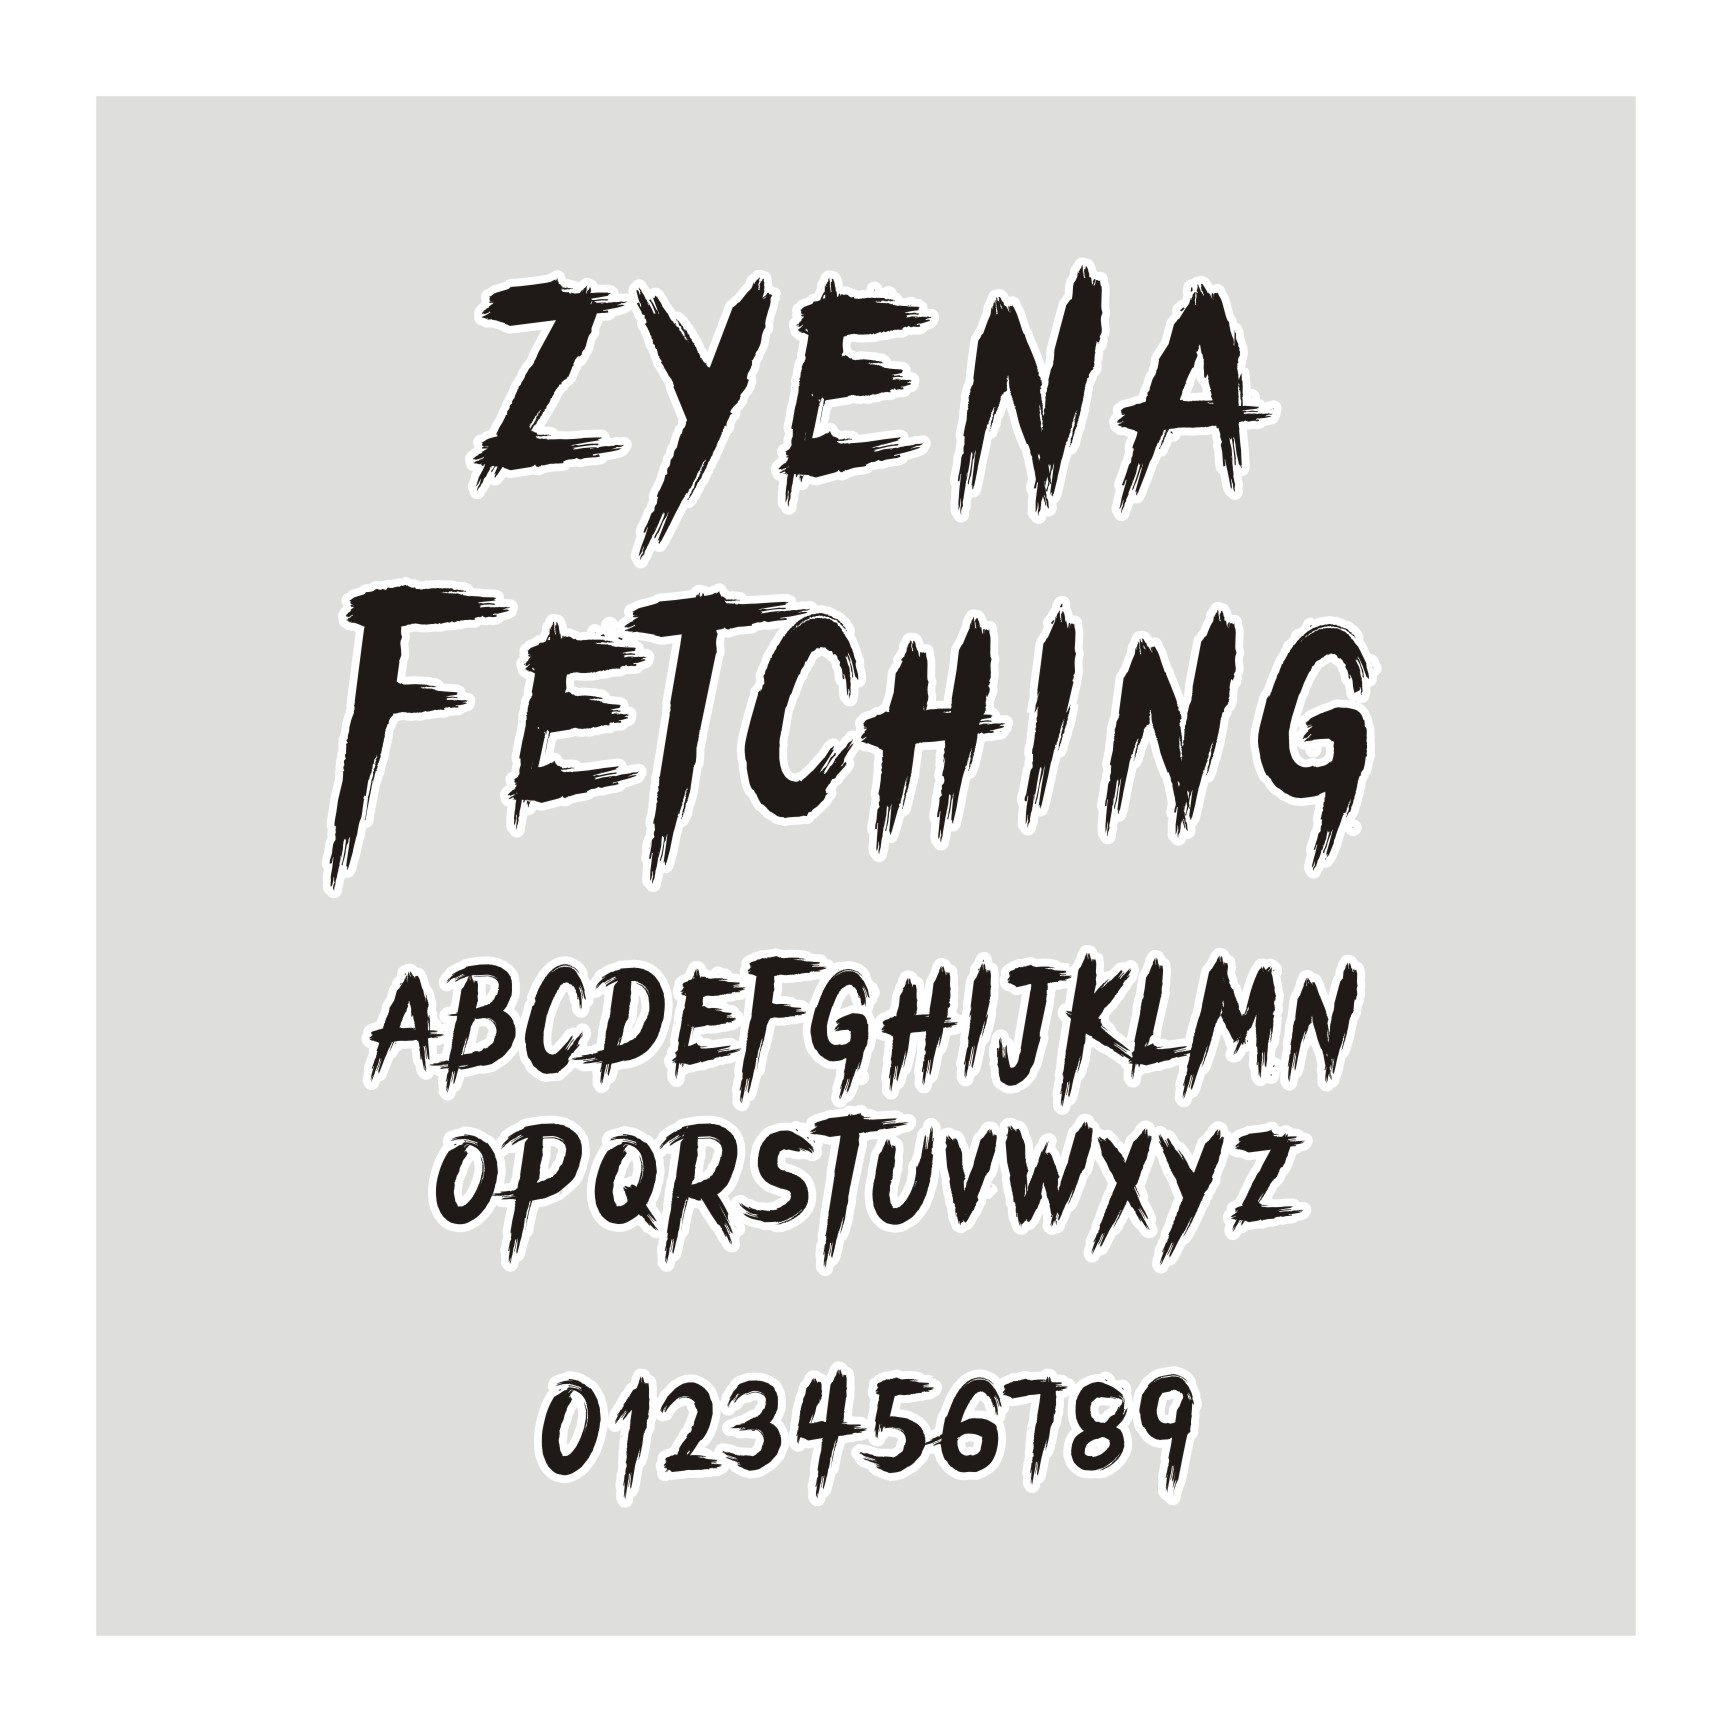 ZYENA Fetching